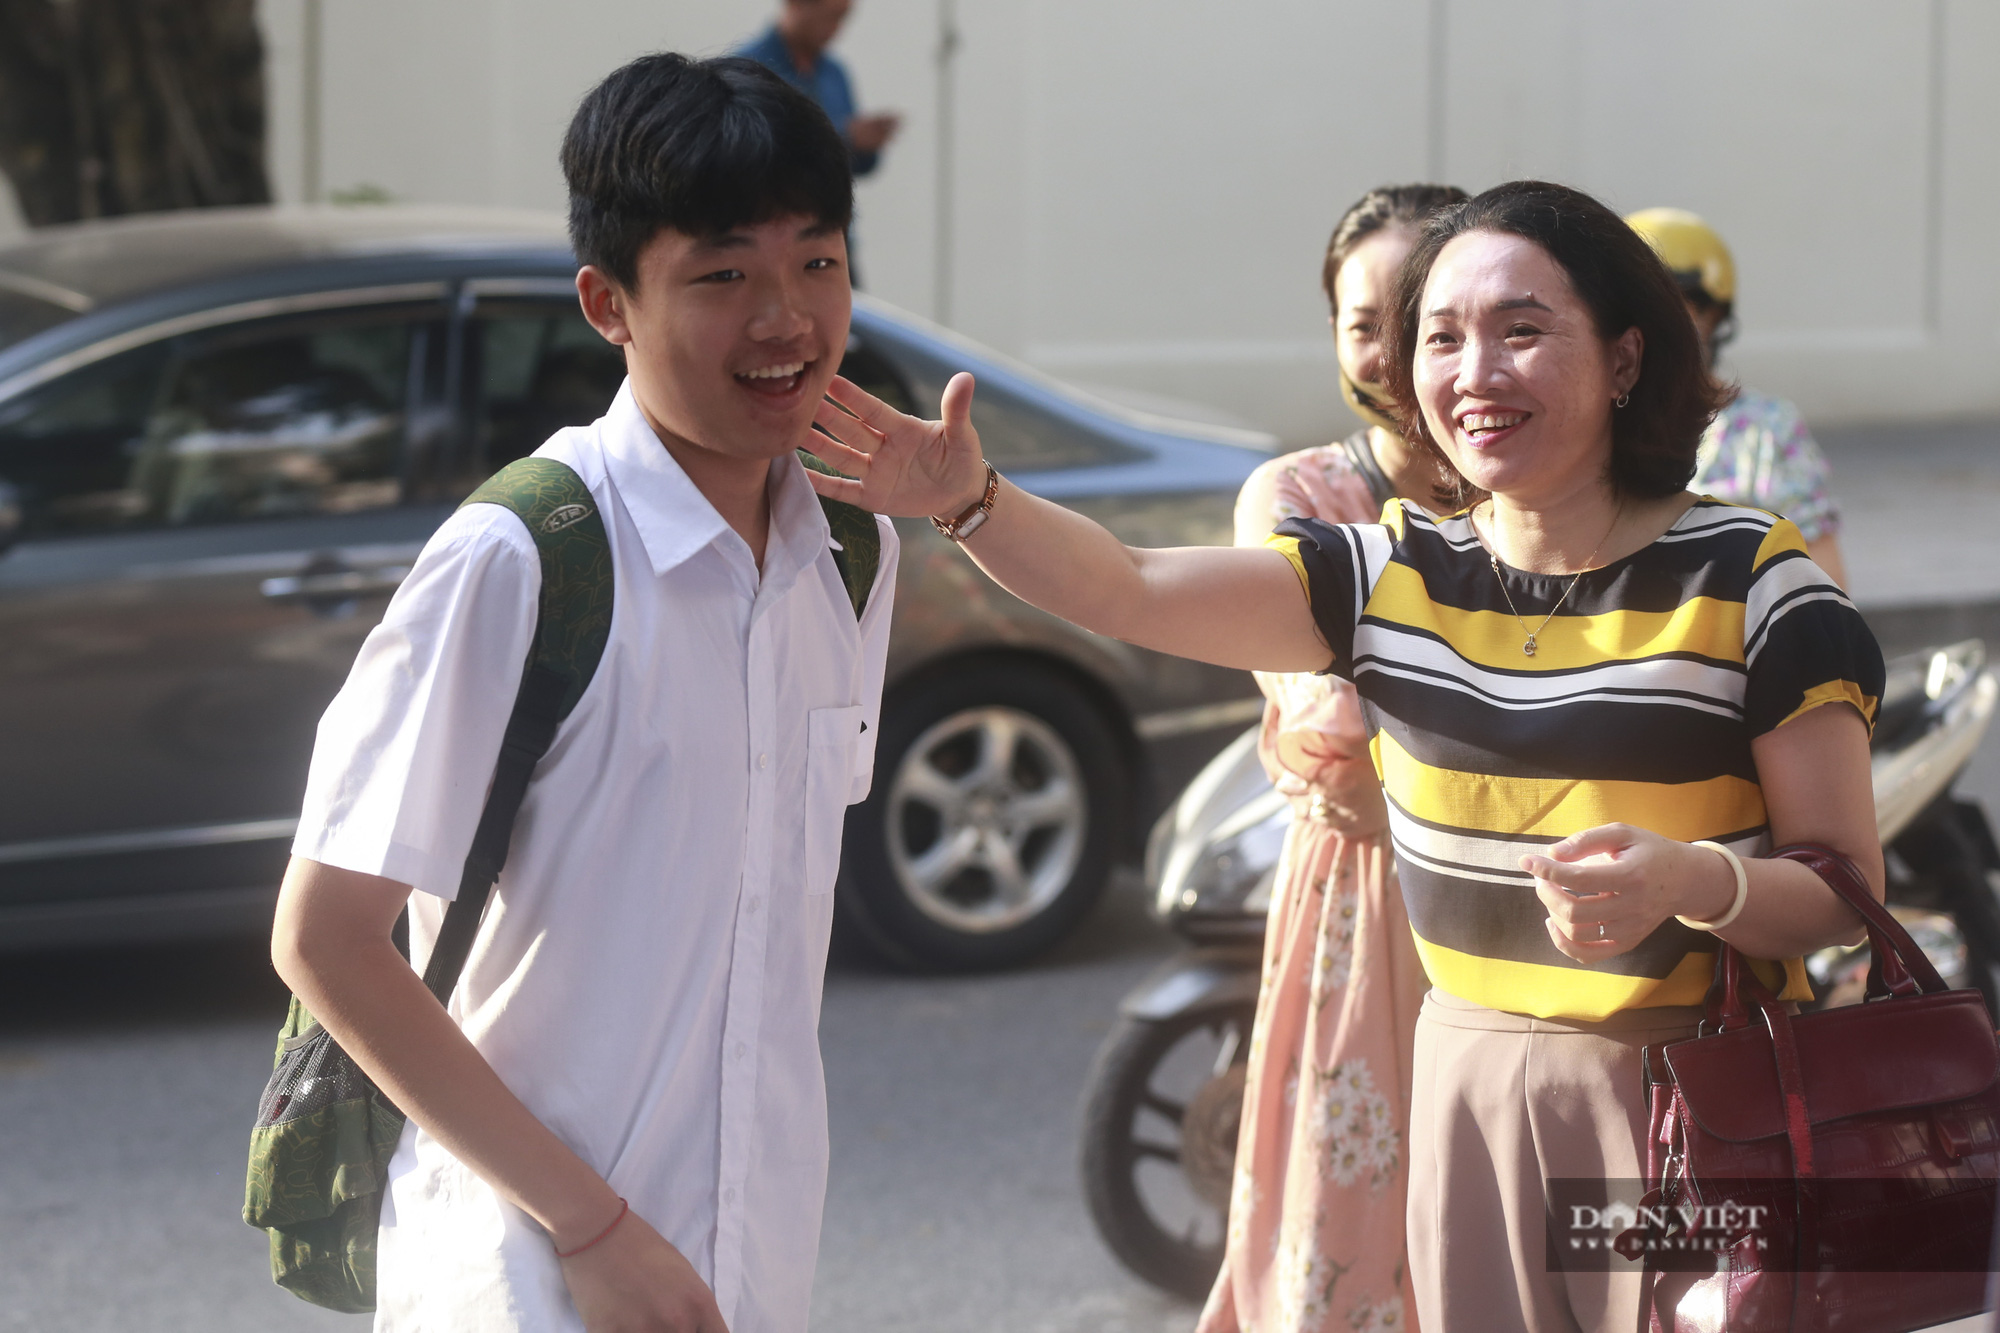 Bước vào môn thi cuối trong kỳ tuyển sinh lớp 10 THPT tại Hà Nội, các thí sinh có tâm trạng thoải mái khi đề thi 2 môn Ngữ văn và Tiếng Anh trong ngày thi 17/7 đều dễ thở và vừa sức.